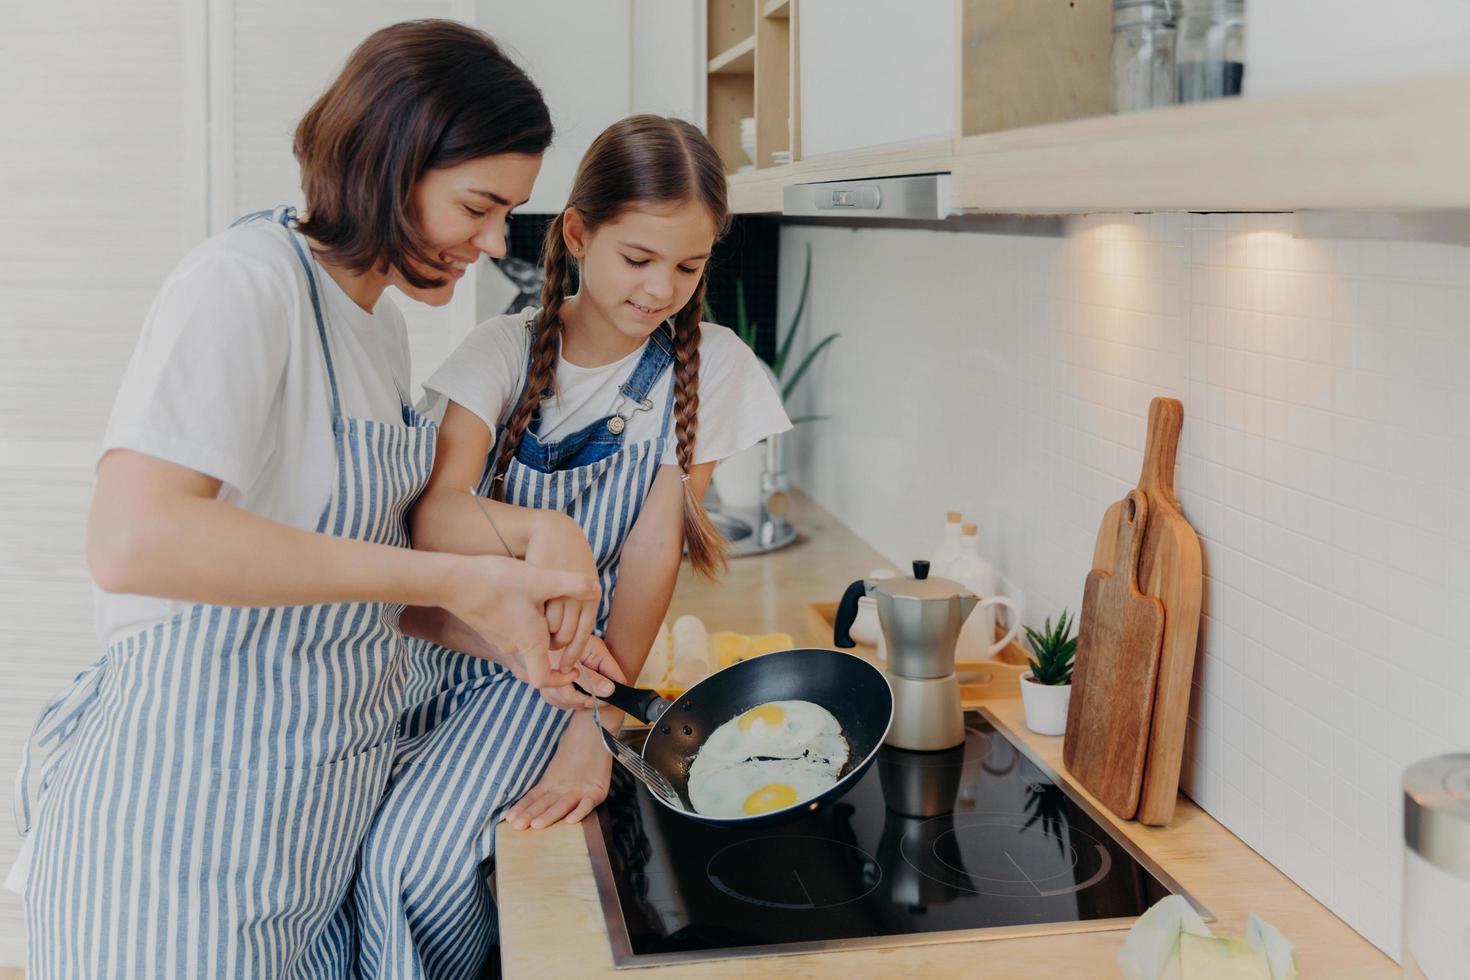 la mère et la fille occupées portent des tabliers rayés, posent dans la cuisine près de la cuisinière, font frire des œufs sur une poêle, préparent un petit-déjeuner rapide, profitent de l'atmosphère domestique. maman apprend à un petit enfant à cuisiner. notion de famille heureuse photo